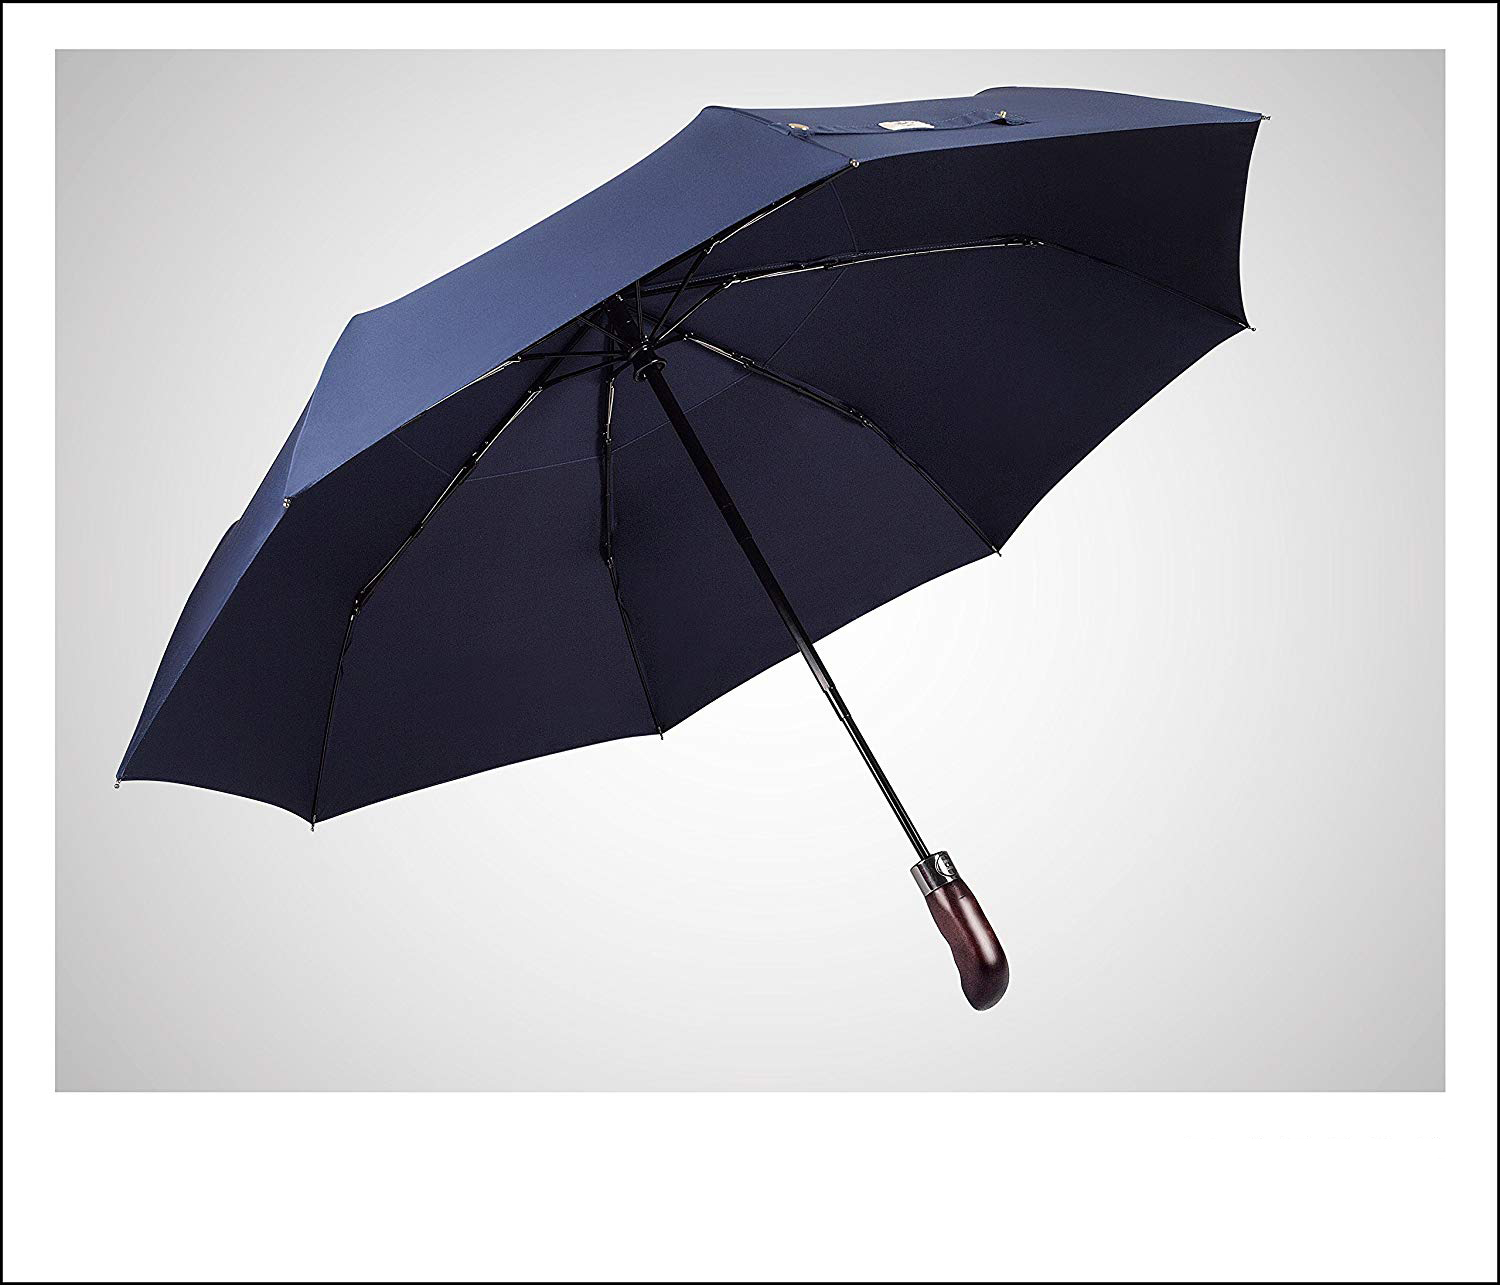 Benutzerdefinierte vollautomatische Holzgriff 3-fach Doppel-Baldachin-Regenschirm mit Logo-Print